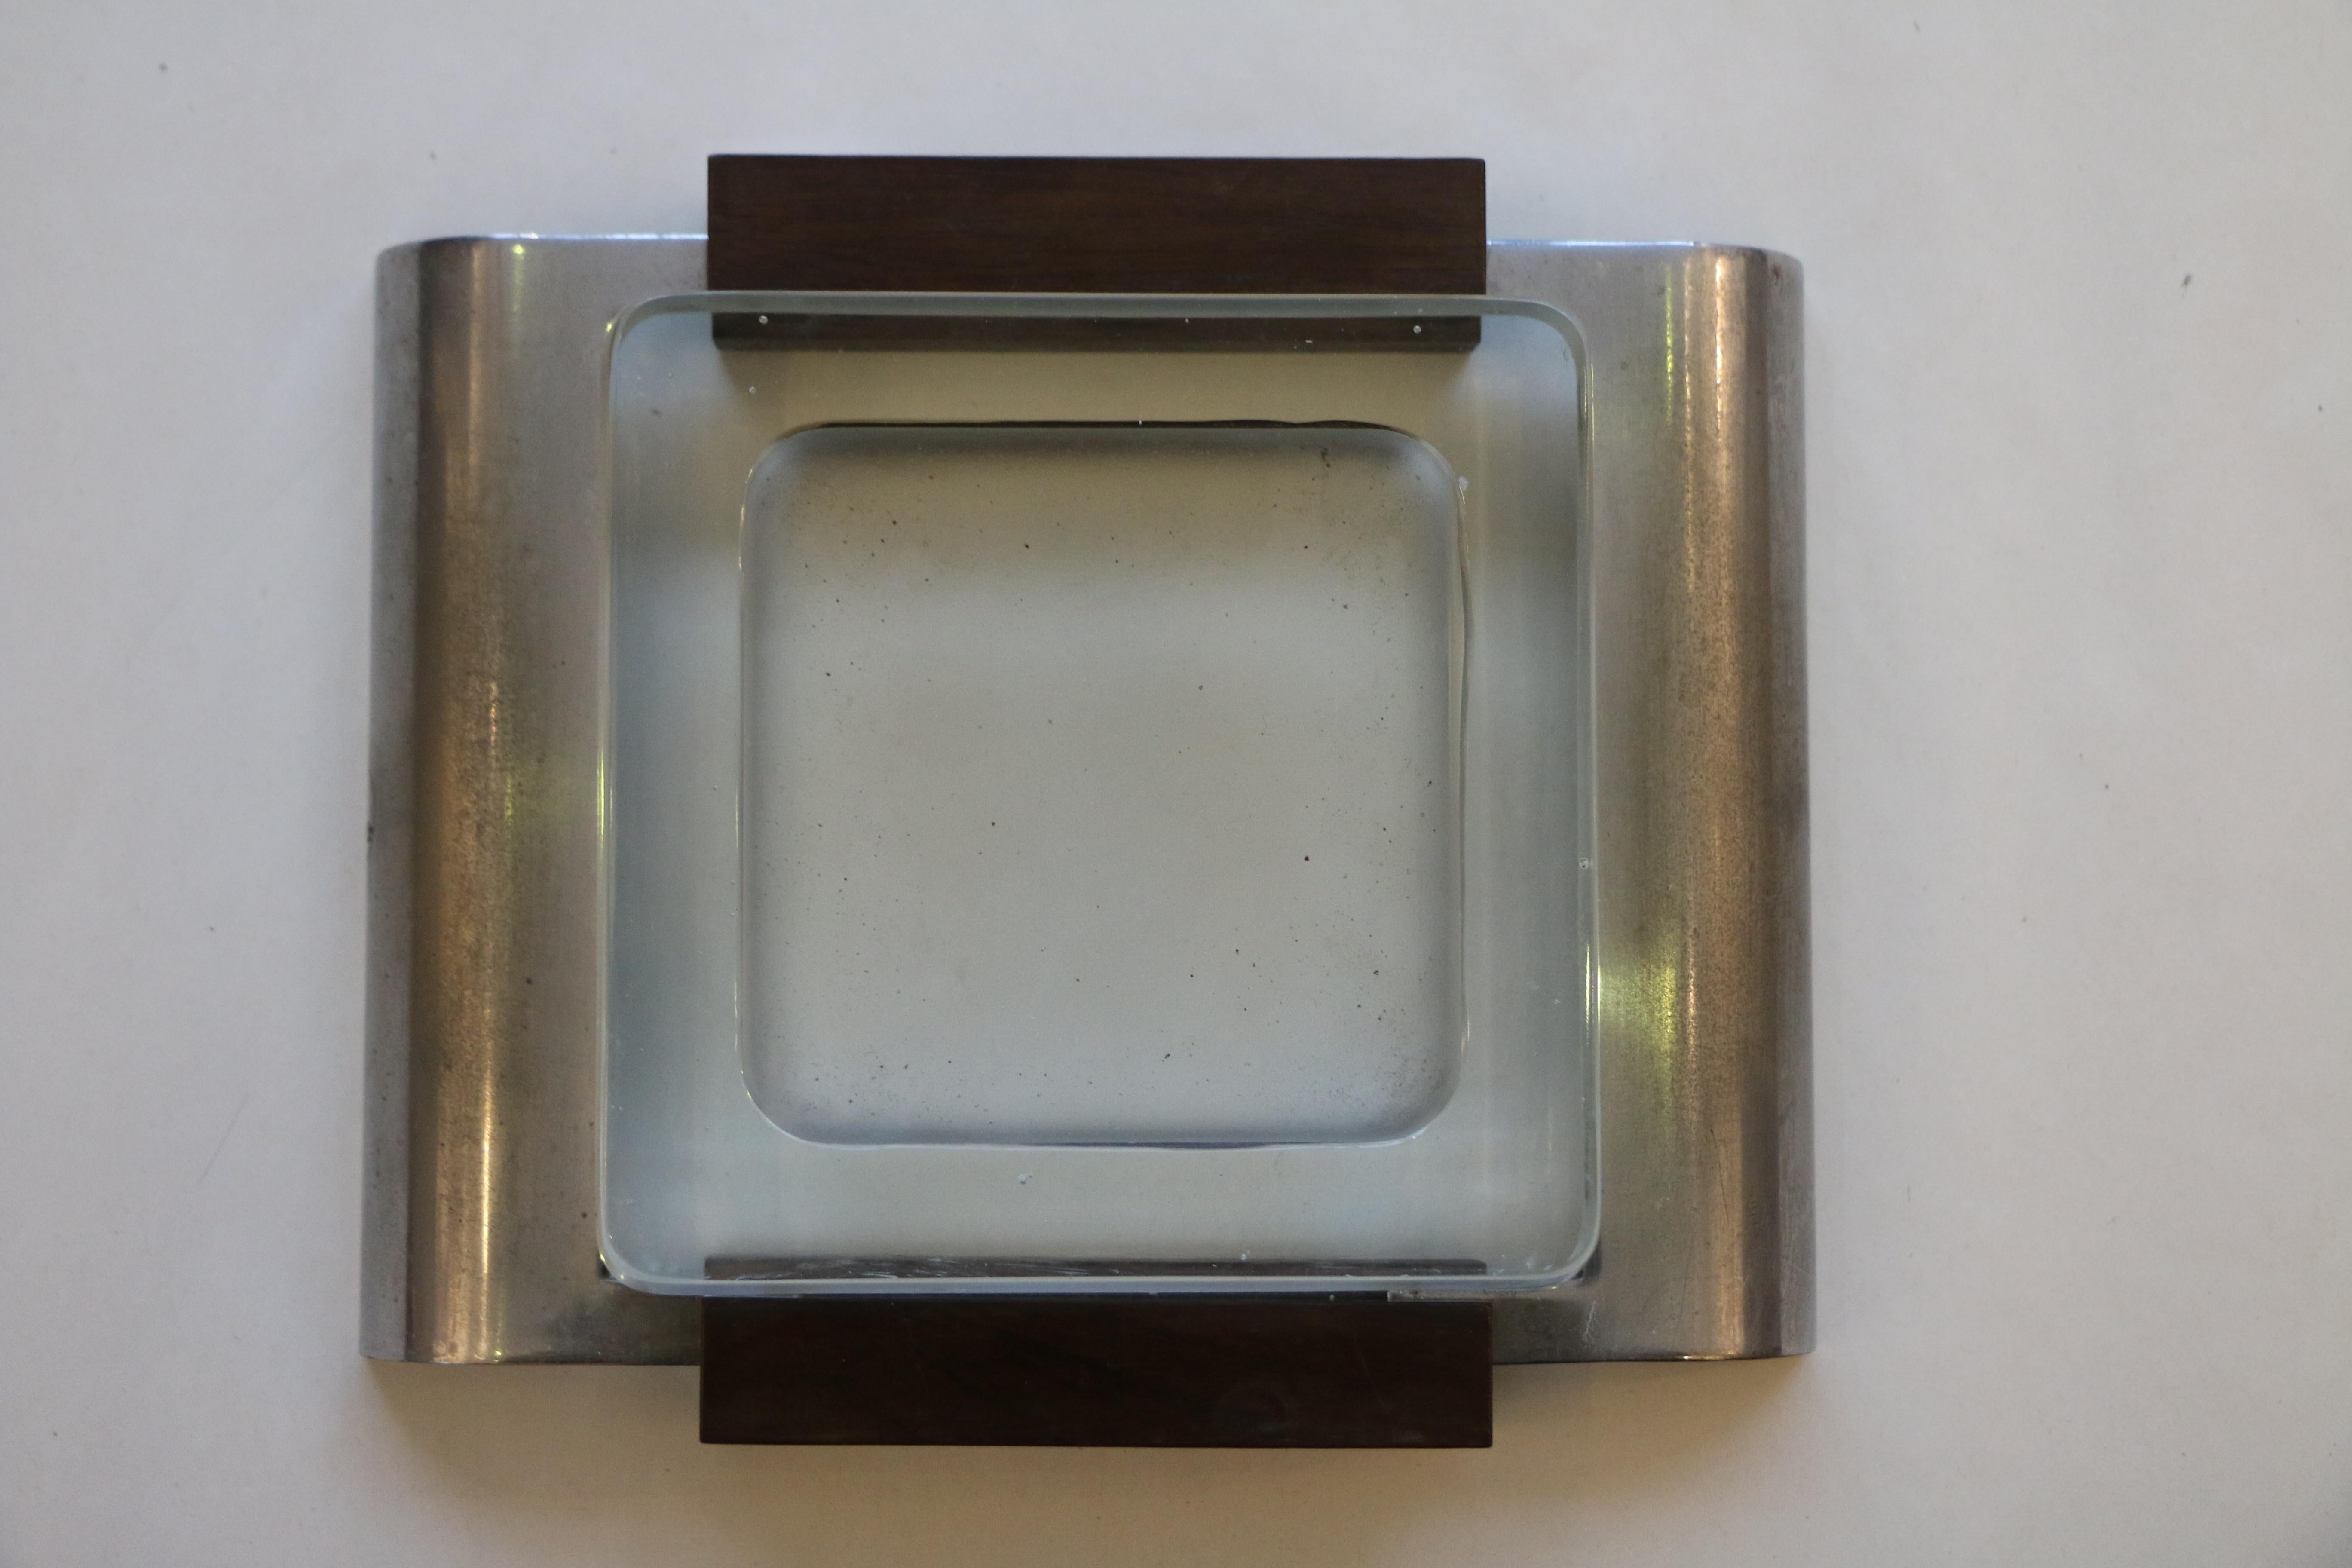 Seltene modernistische Vide-Poche (Pin-Tablett) oder Aschenbecher von Boris Lacroix. Er ist aus vernickeltem Metall, dickem Glas und Holz gefertigt. Sie ist mit dem Stempel der Werkstatt von Boris Lacroix signiert.

Boris Lacroix war einer der